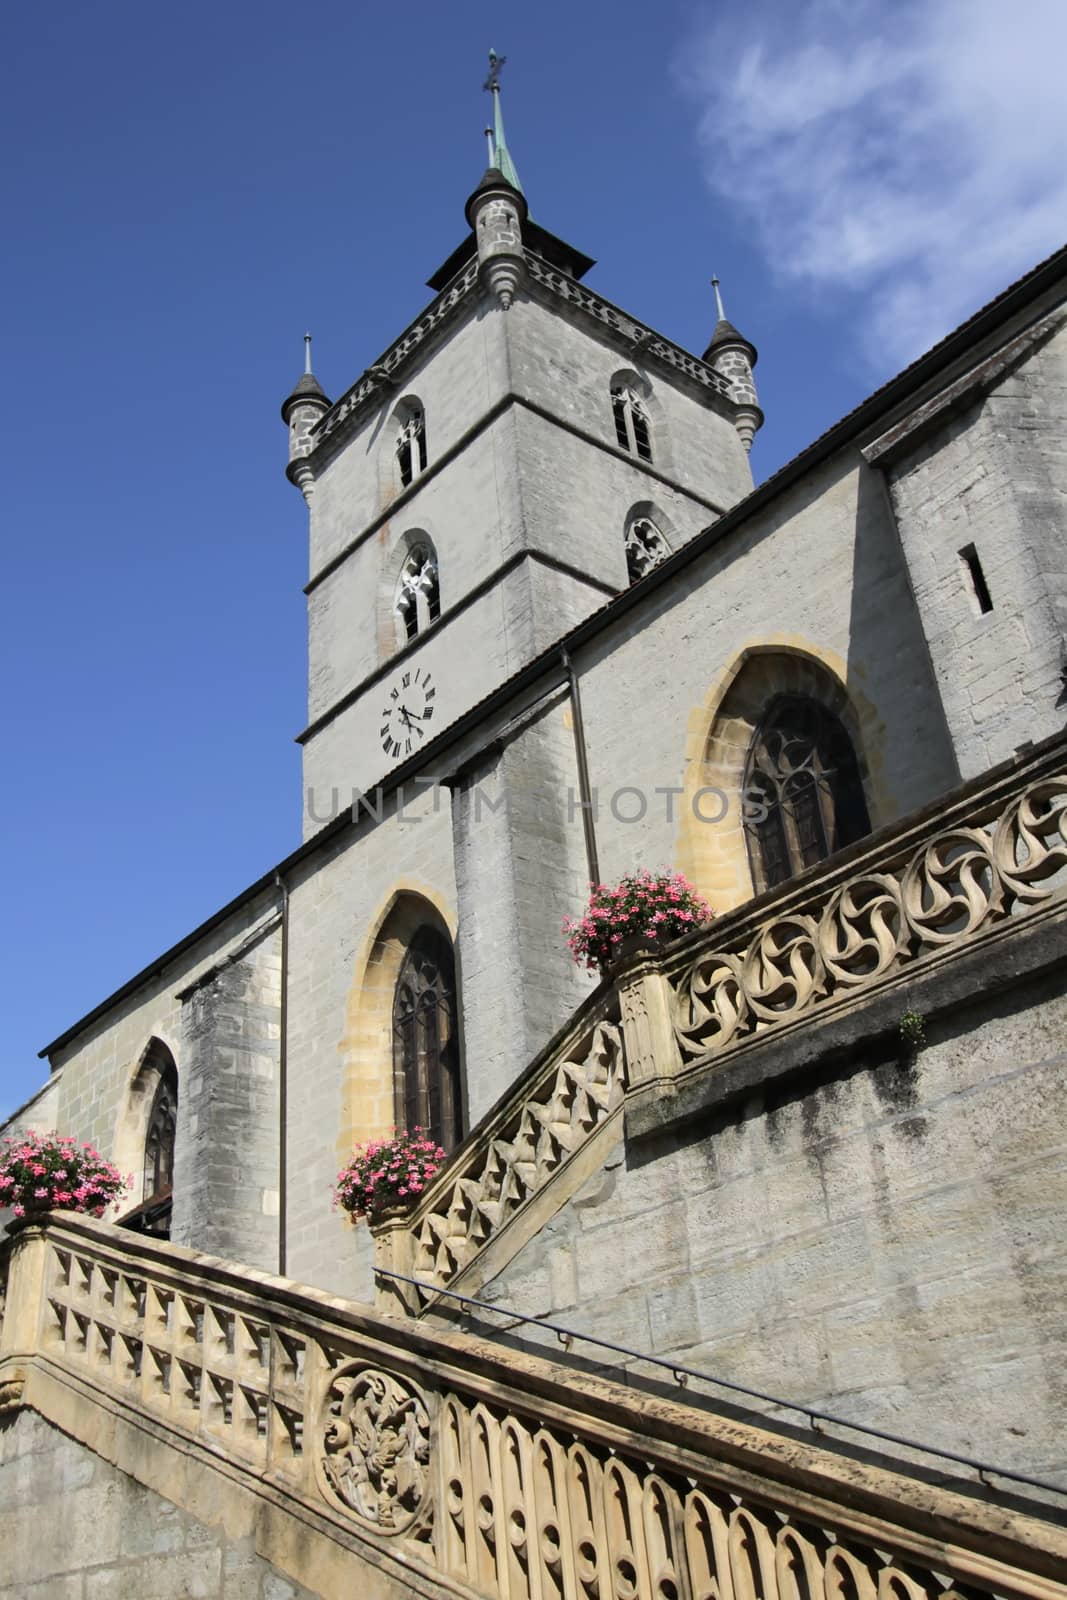 Church Saint-Laurent in Estavayer-le-Lac, Switzerland by Elenaphotos21